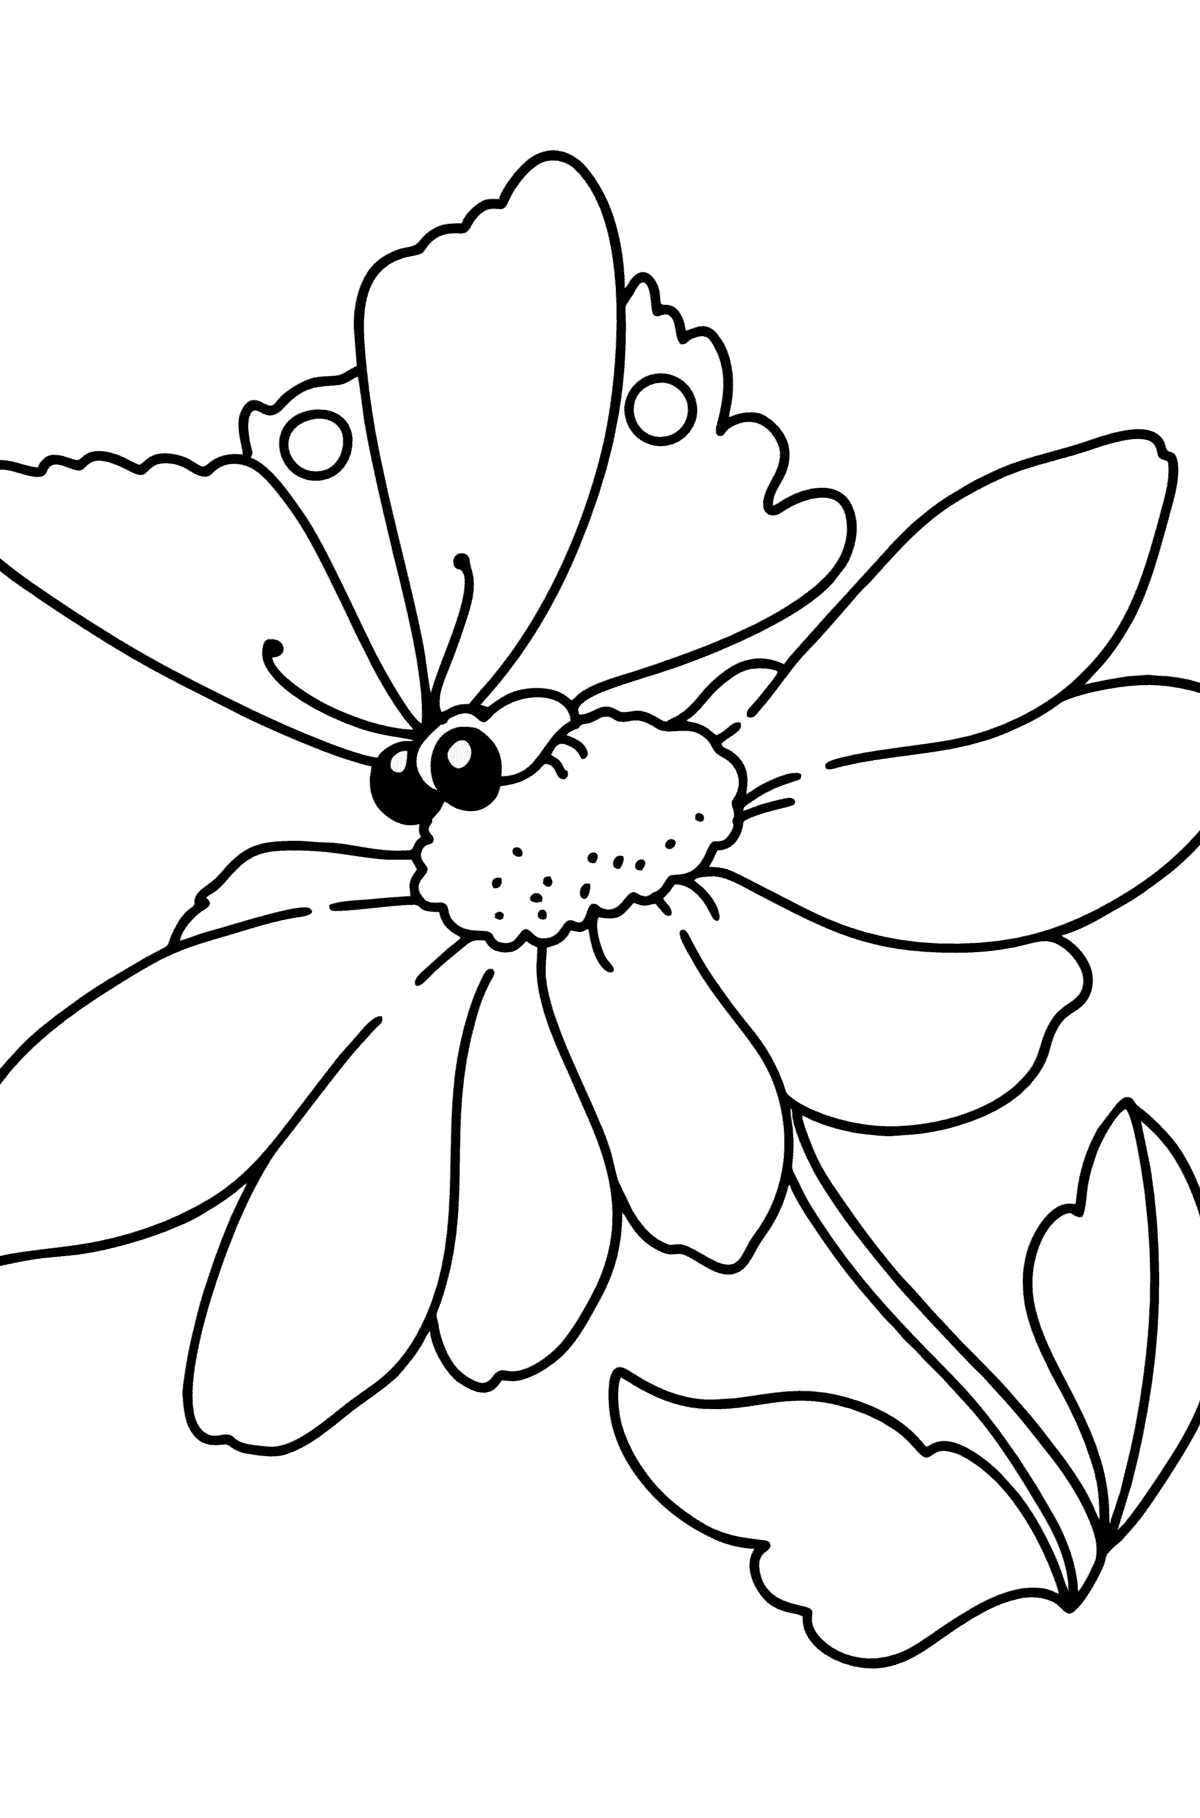 Tegning til fargelegging sommer - blomster og sommerfugl - Tegninger til fargelegging for barn